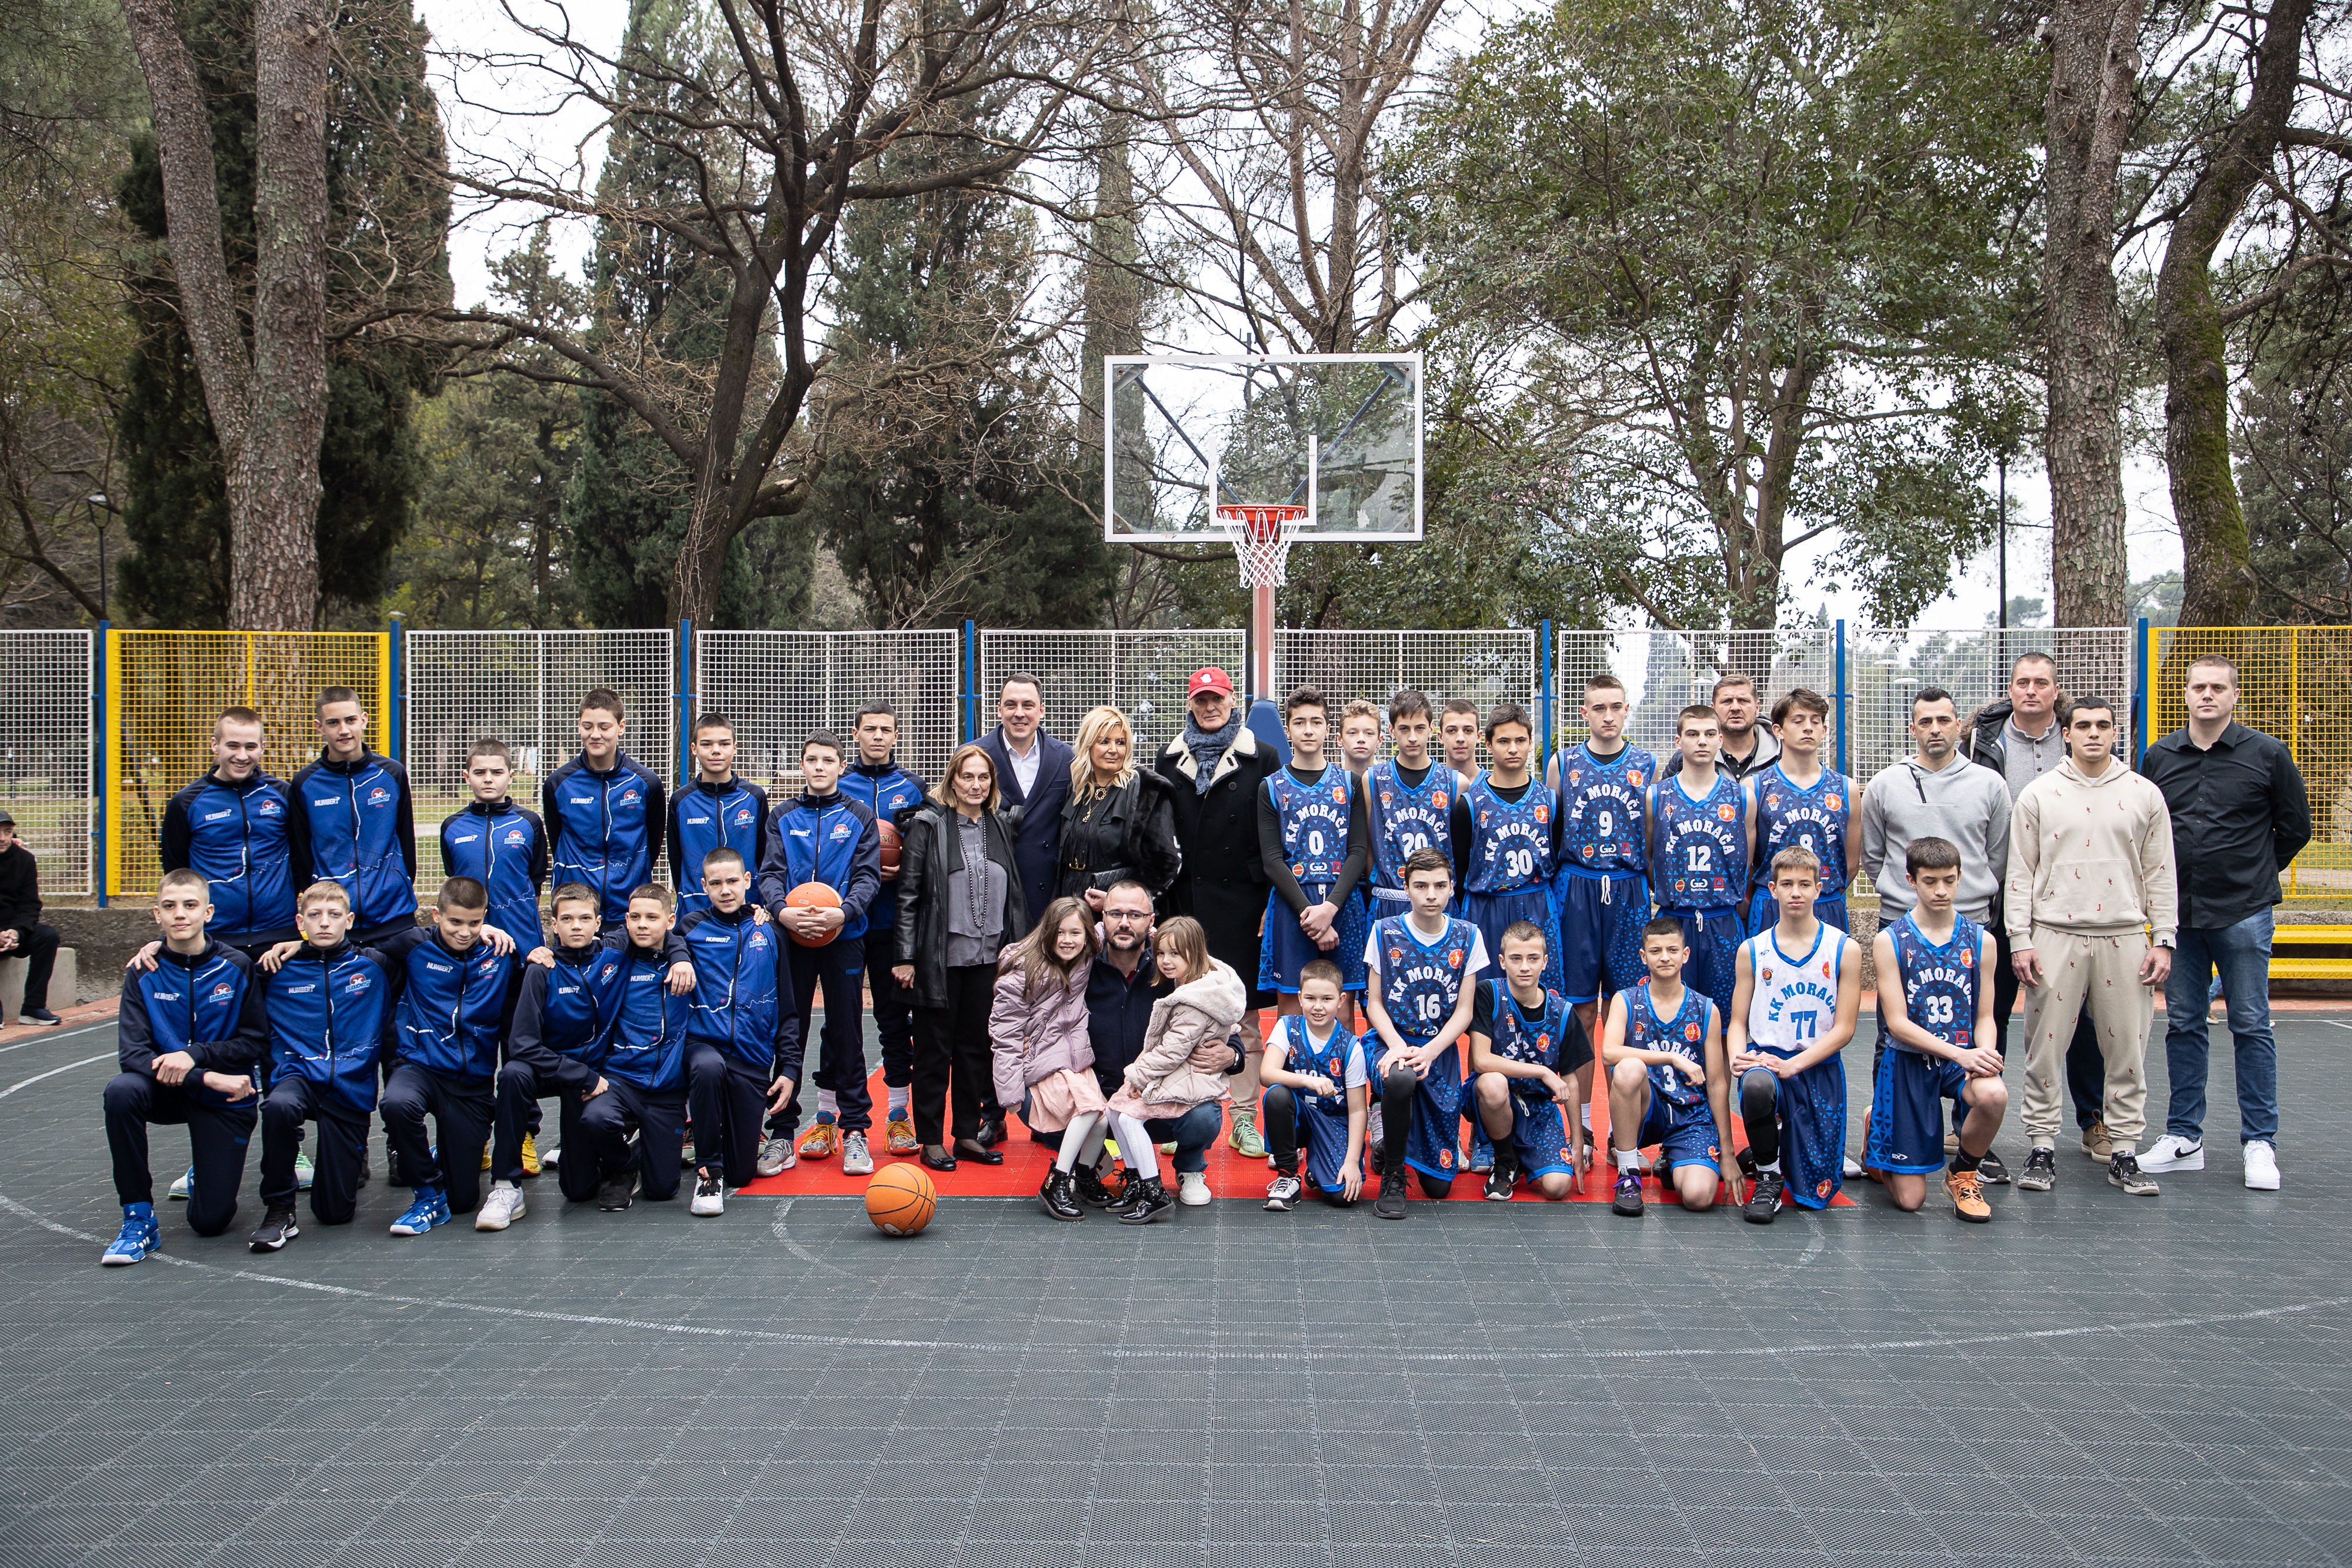 Košarkaško igralište u Njegoševom parku od danas nosi ime legende podgoričke Budućnosti- Dragana Ivanovića